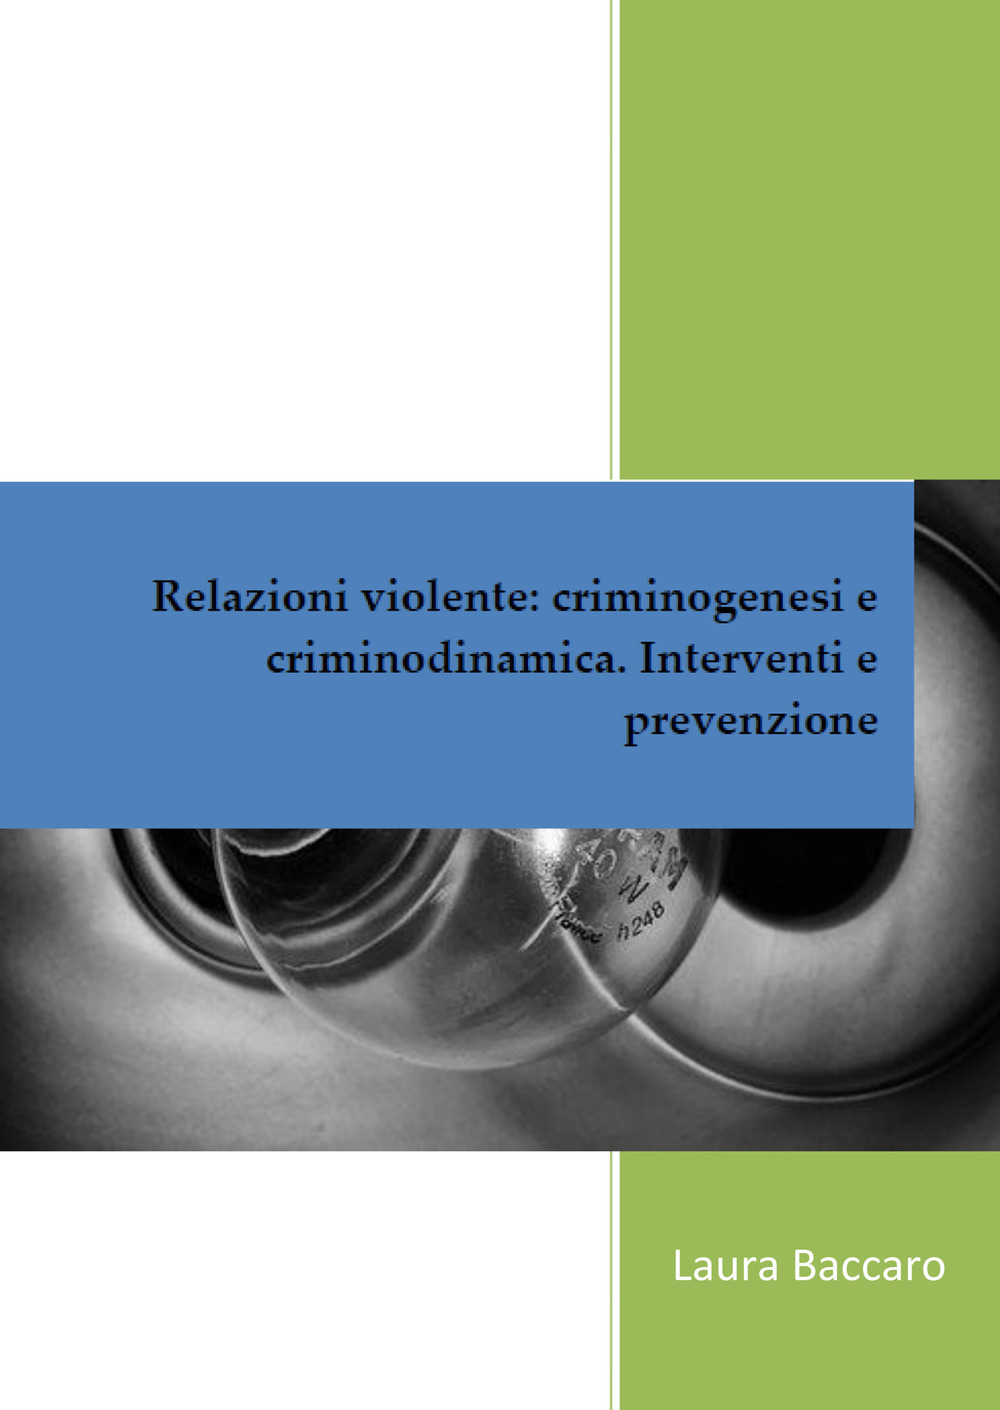 Relazioni violente: criminogenesi e criminodinamica. Interventi e prevenzione